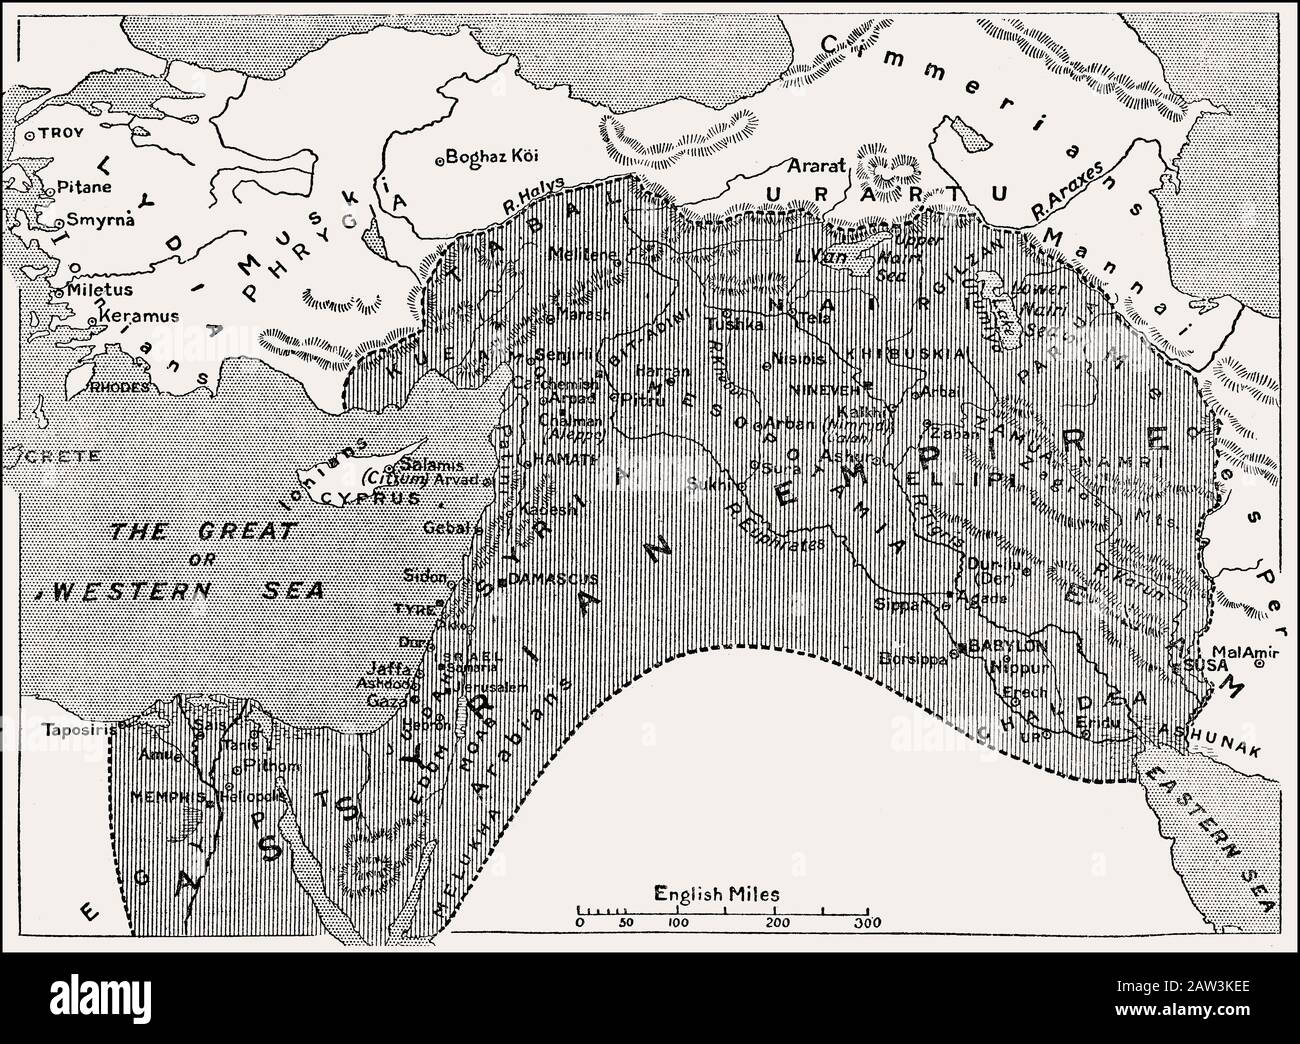 assyrian empire map